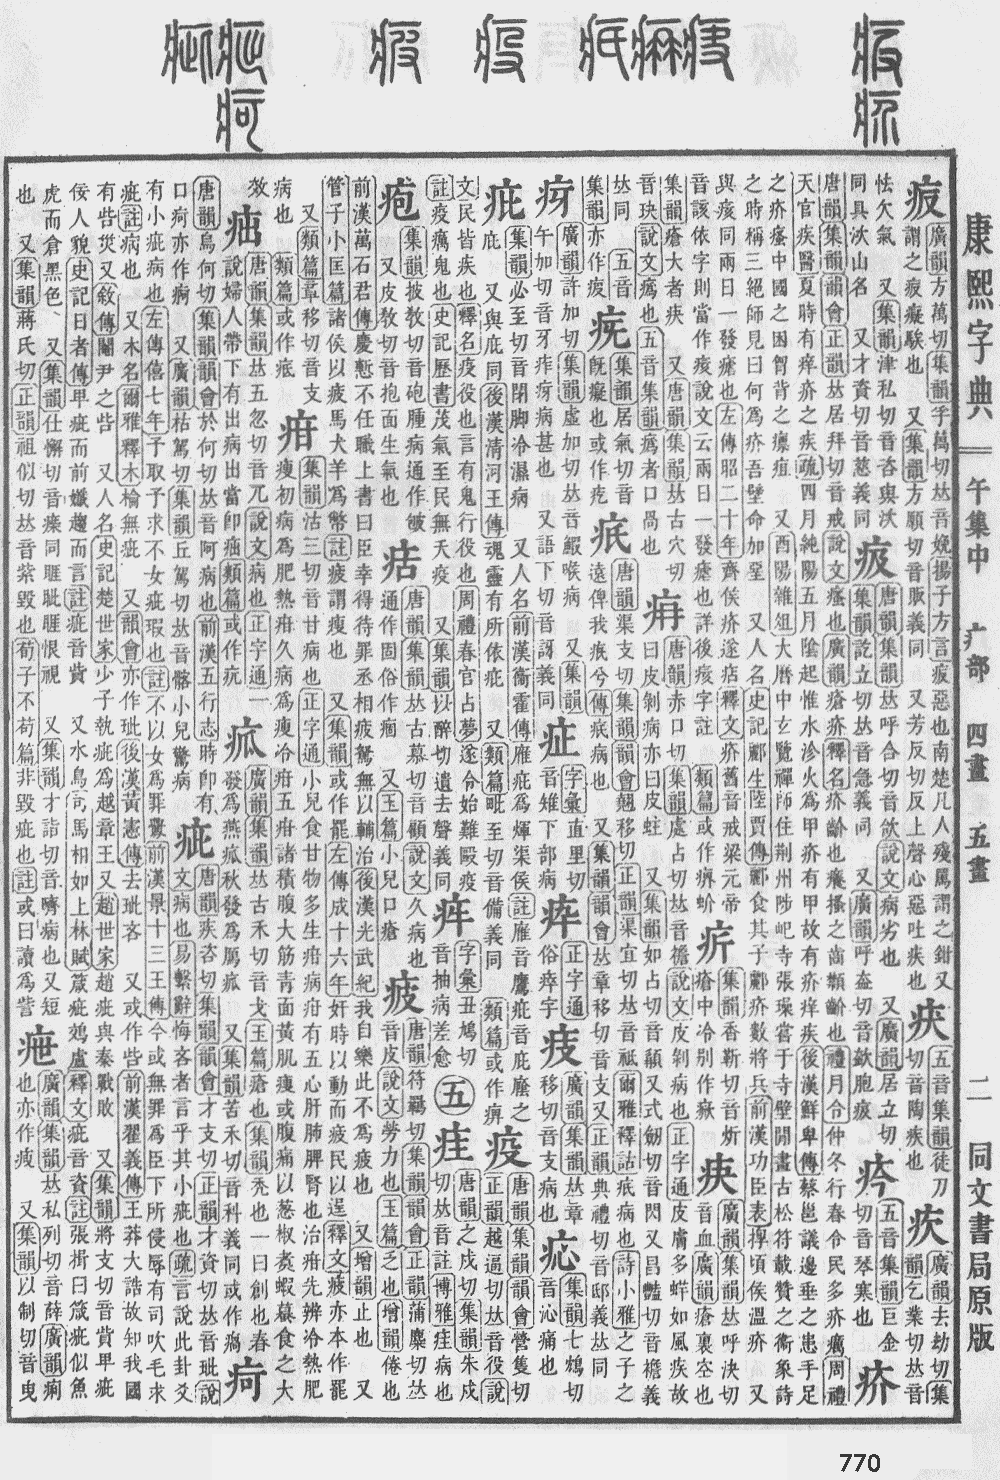 康熙字典第770页图片